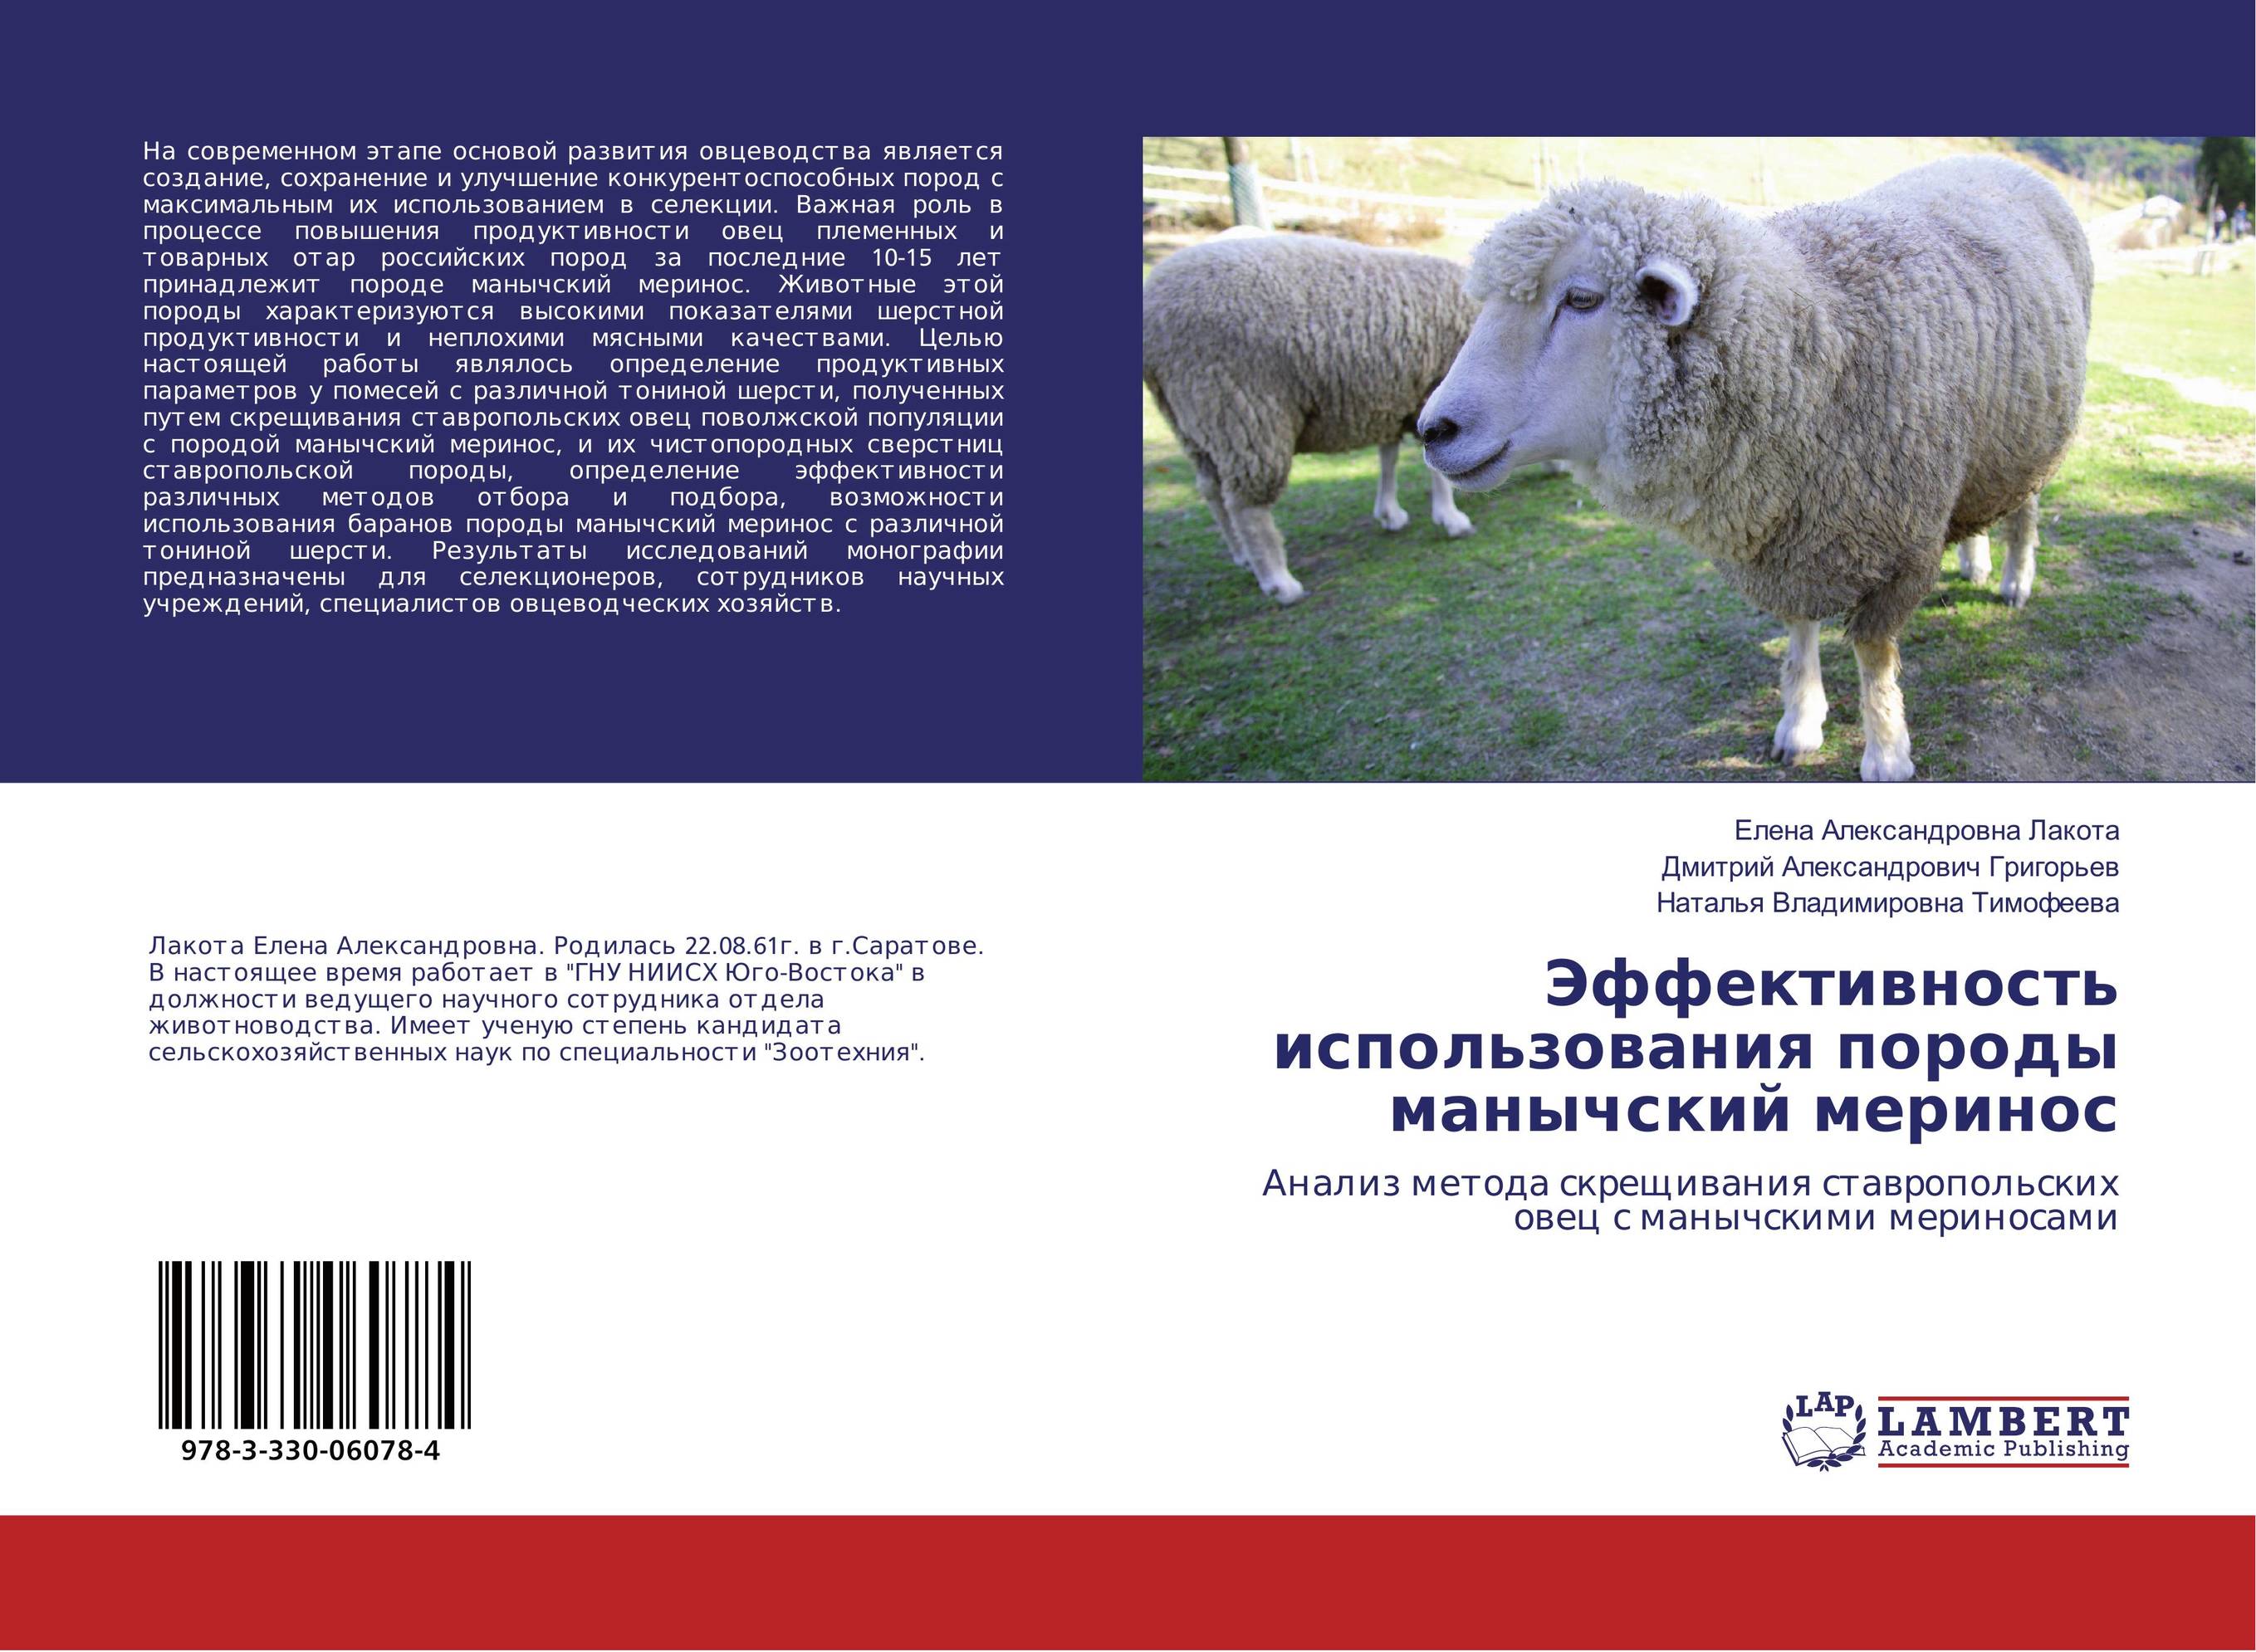 
        Эффективность использования породы манычский меринос. Анализ метода скрещивания ставропольских овец с манычскими мериносами.
      